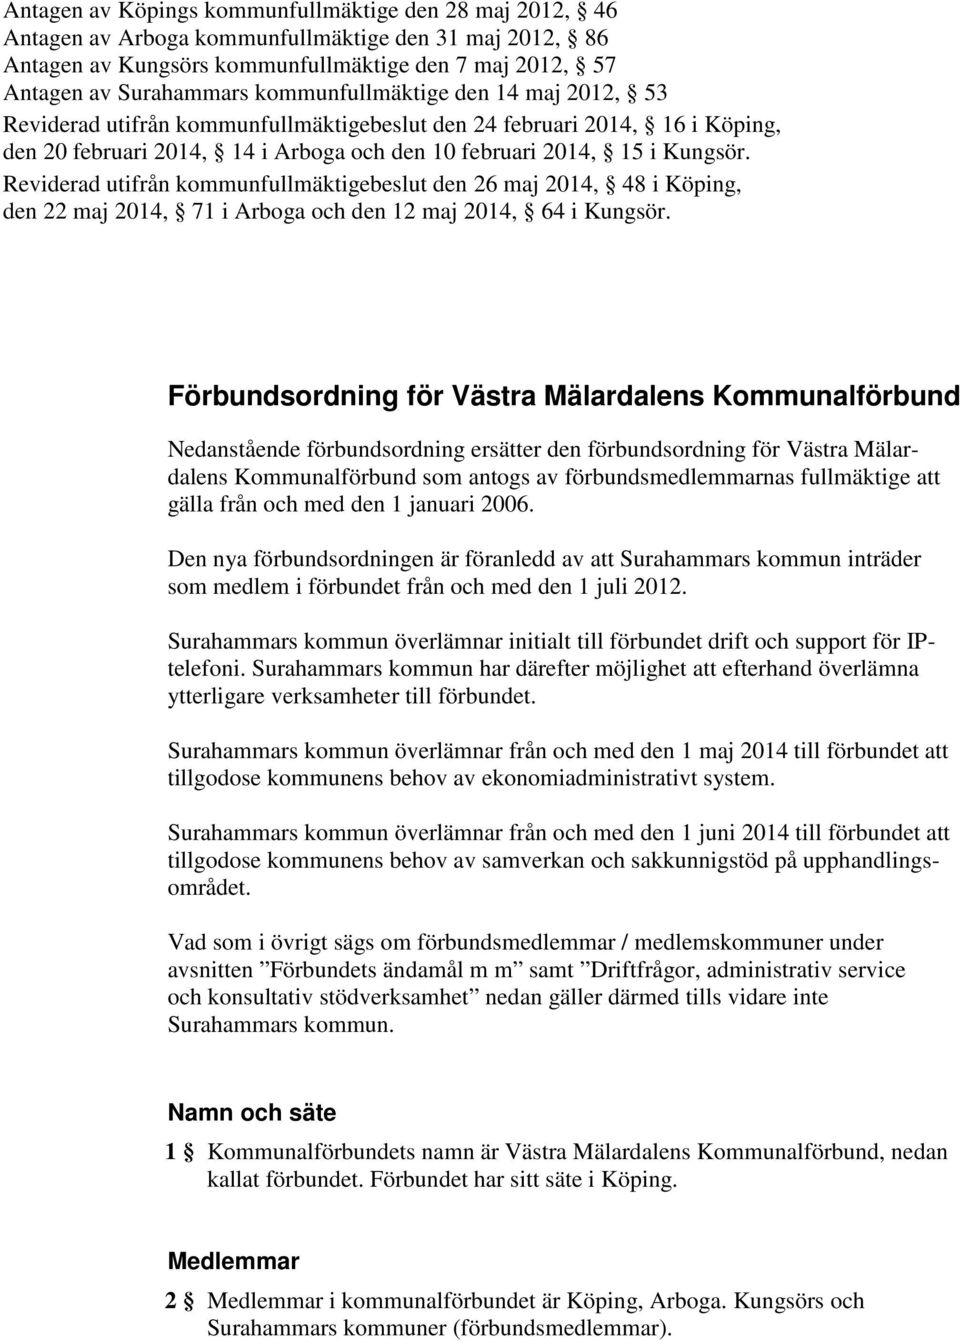 Reviderad utifrån kommunfullmäktigebeslut den 26 maj 2014, 48 i Köping, den 22 maj 2014, 71 i Arboga och den 12 maj 2014, 64 i Kungsör.